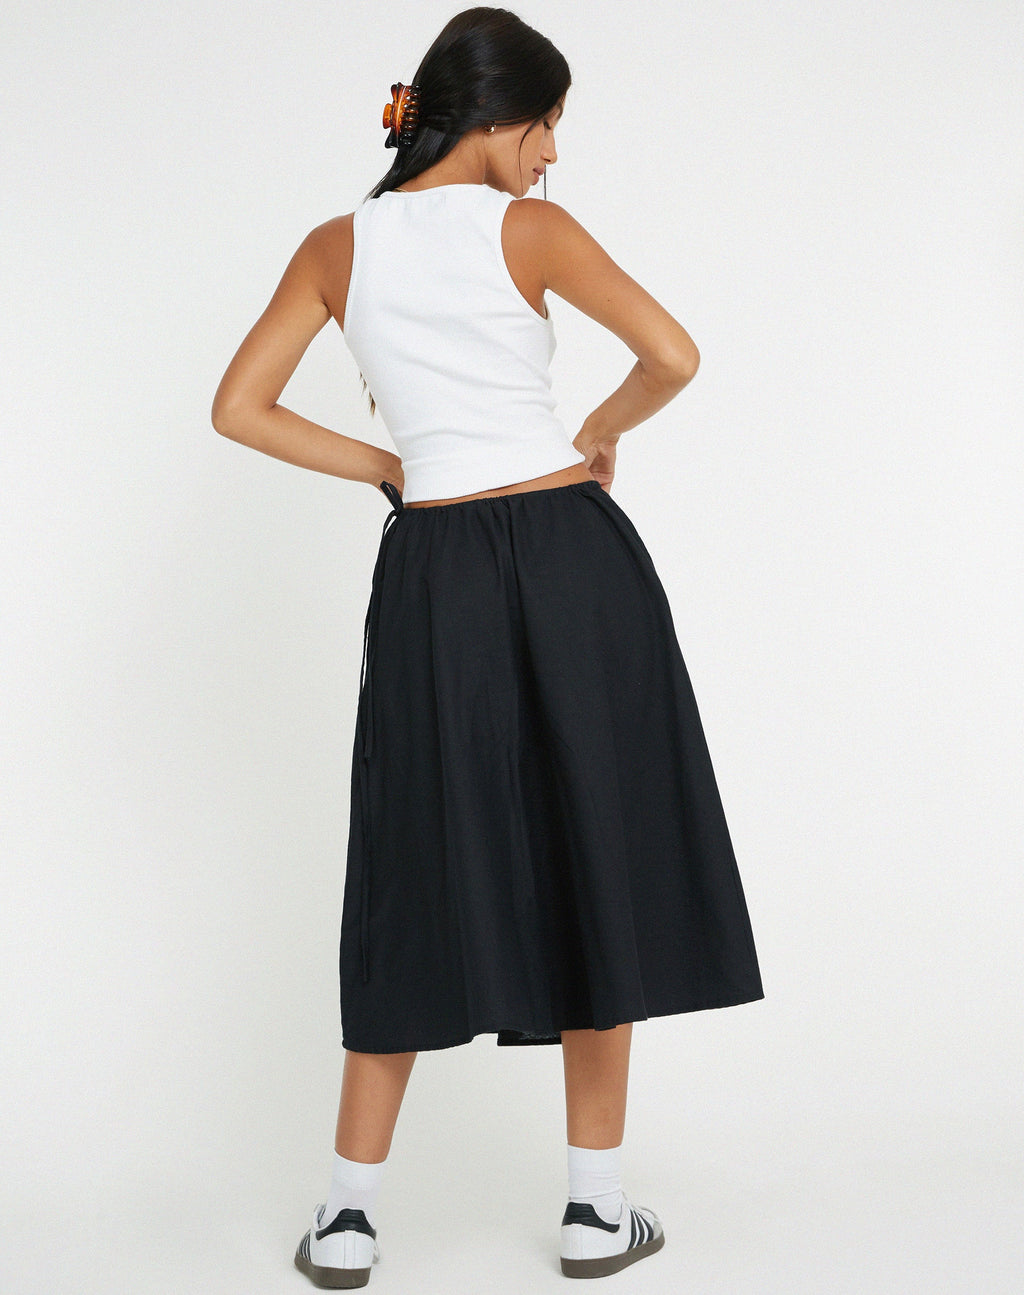 Takara Midi Skirt in Black